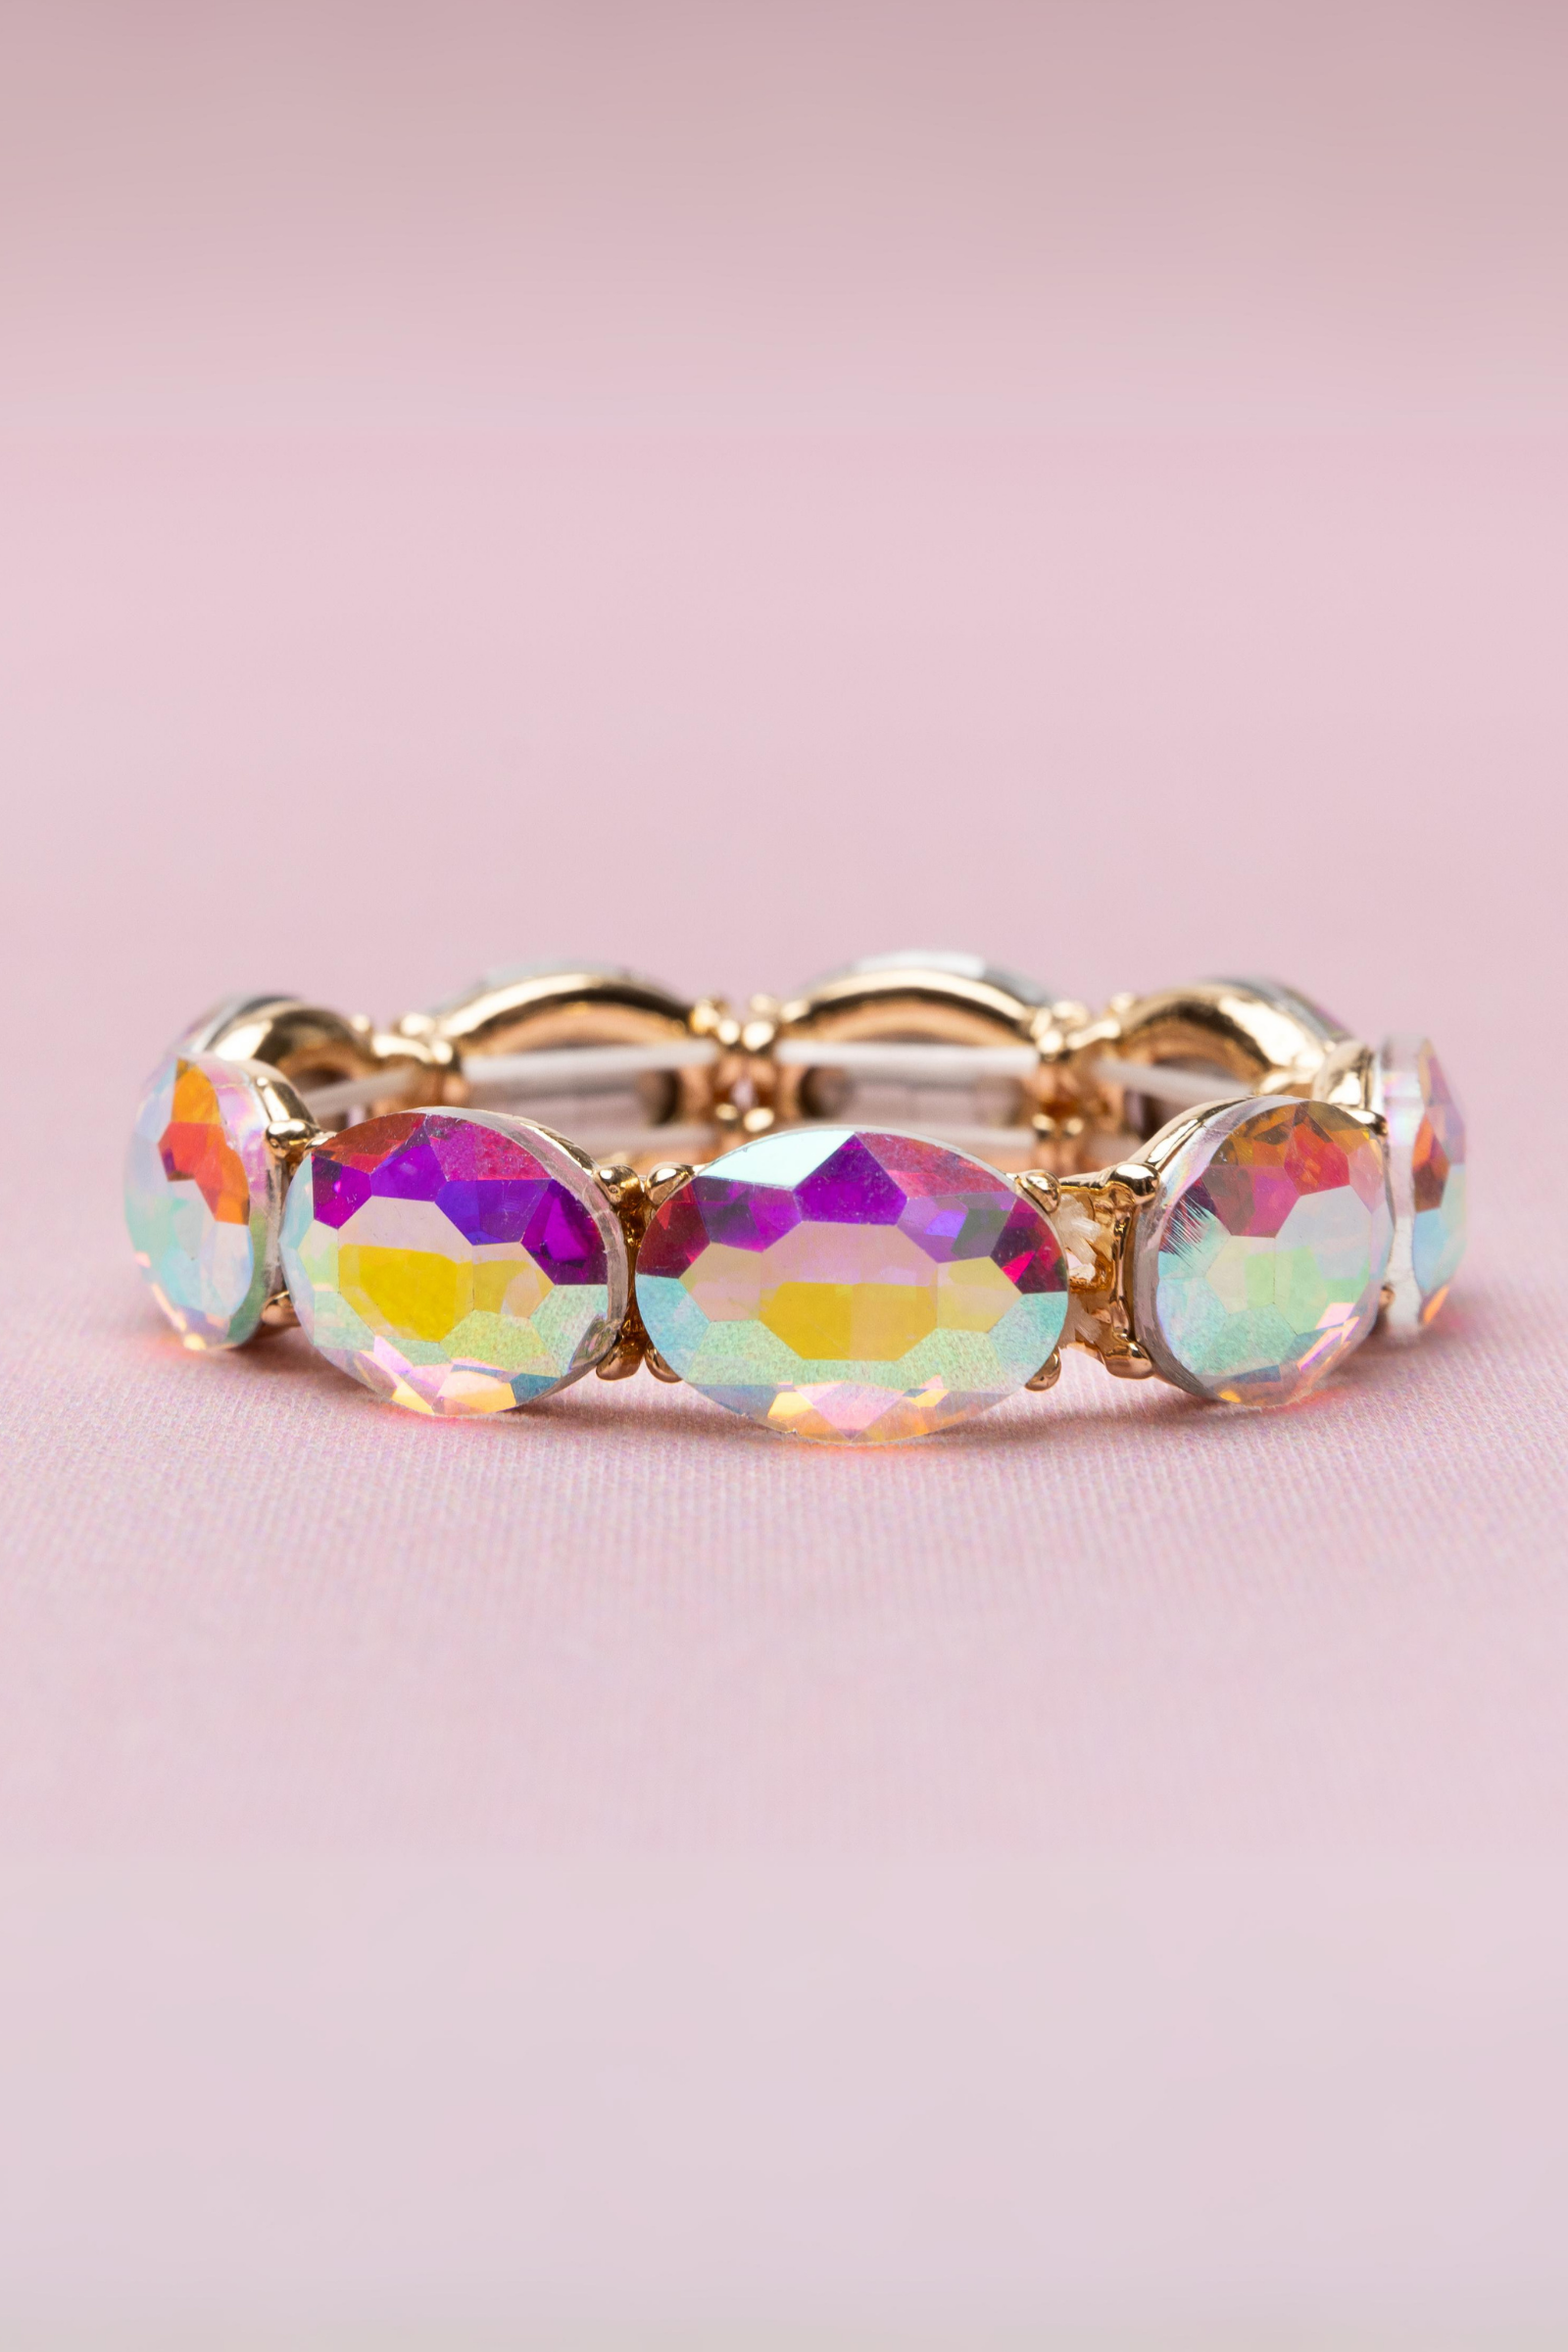 Boutique Chic Aurora Borealis Gem Bracelet